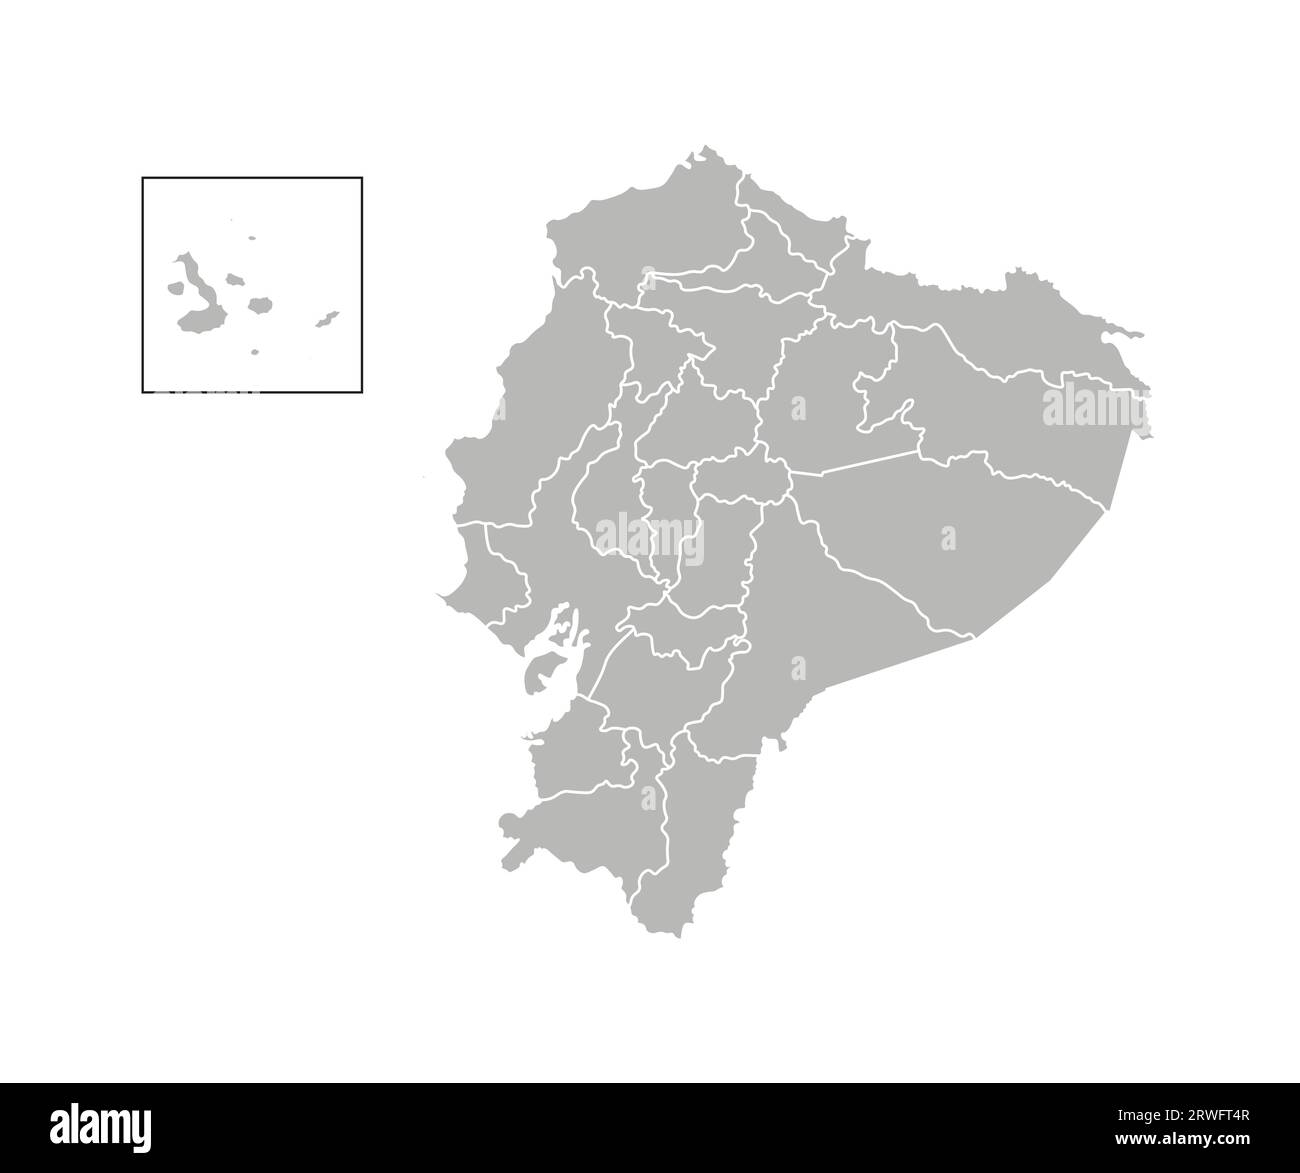 Vektorisolierte Darstellung einer vereinfachten Verwaltungskarte Ecuadors. Grenzen der Provinzen (Regionen). Graue Silhouetten. Weiße Umrandung. Stock Vektor